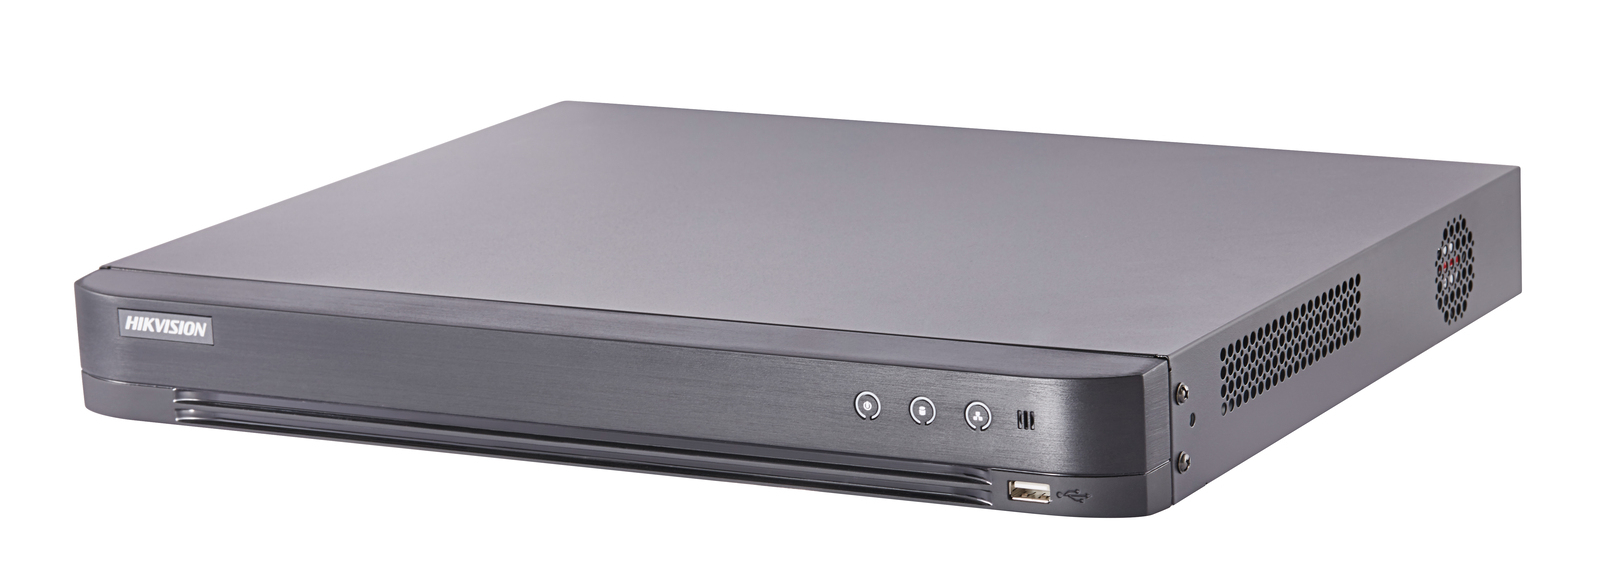 Hikvision DS-7208HUHI-K2 CCTV DVR Digital Video Recorder